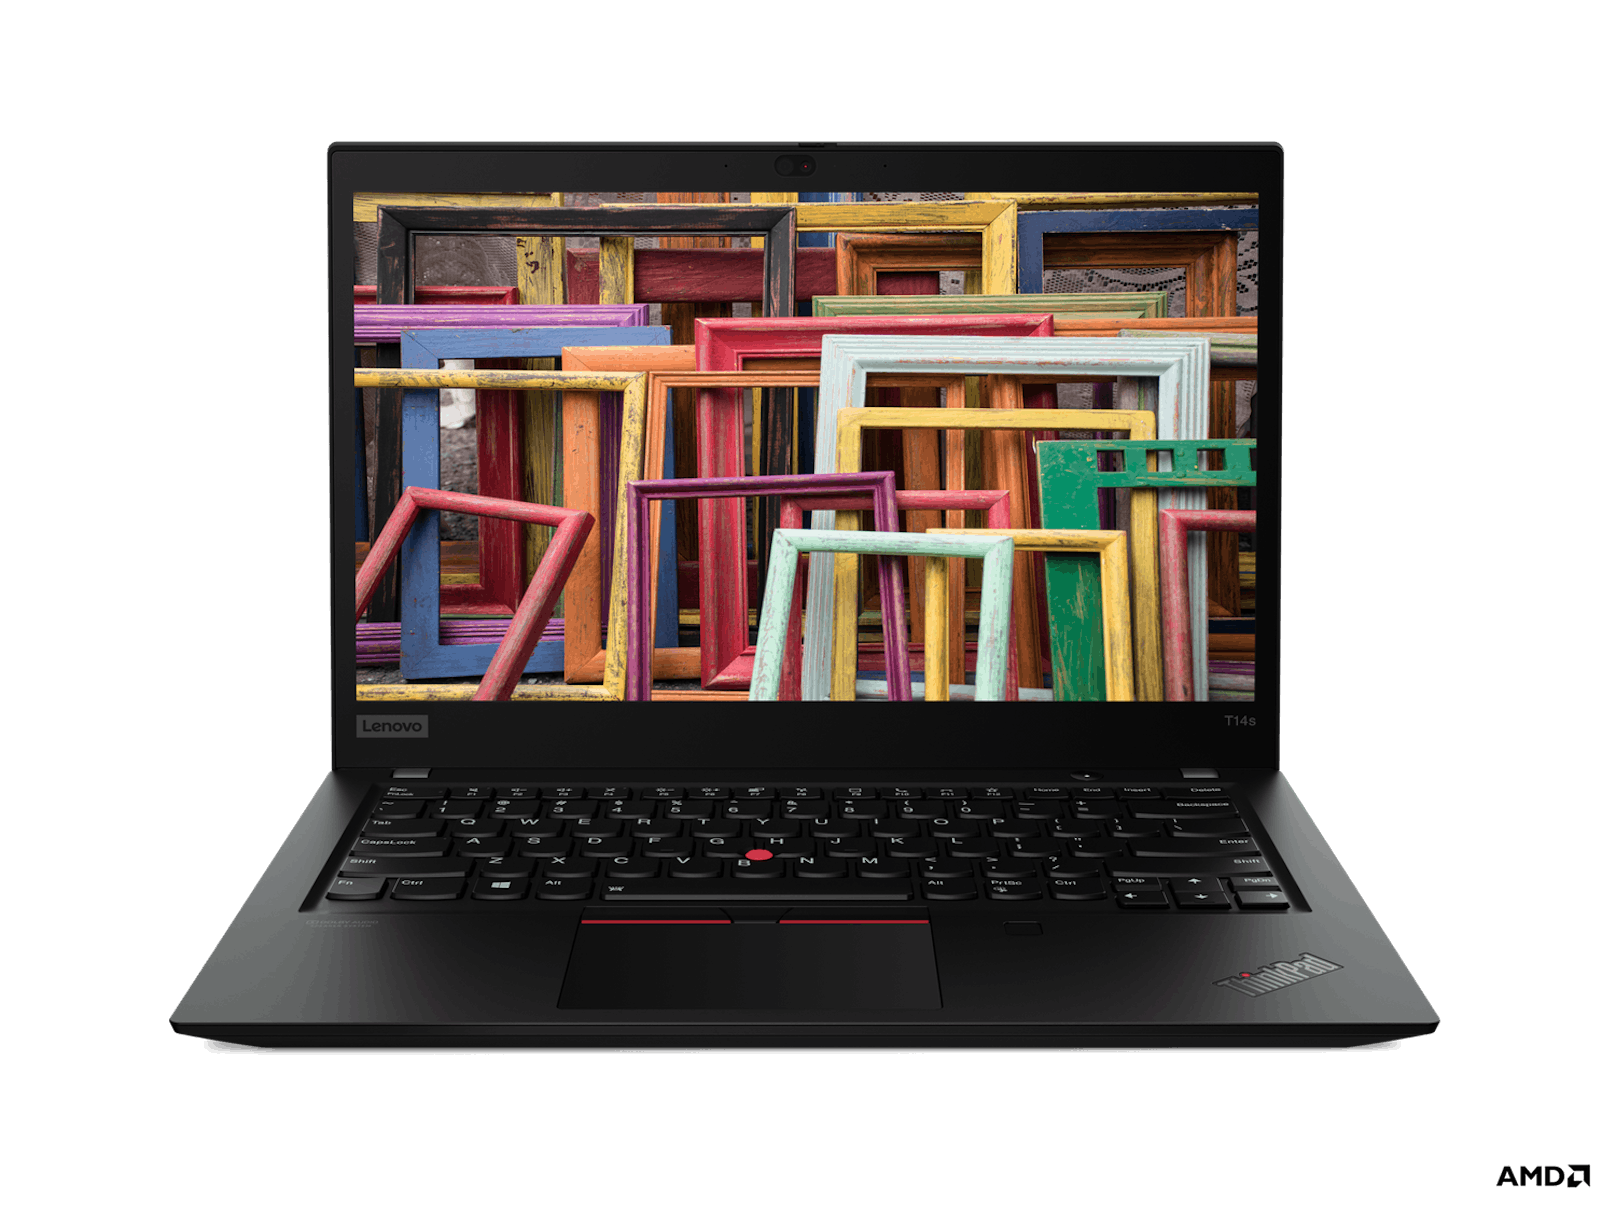 Rechtzeitig vor dem Uni-Semesterstart am 1. März 2021 hat der edustore seine Angebote an neuesten Laptops runderneuert.